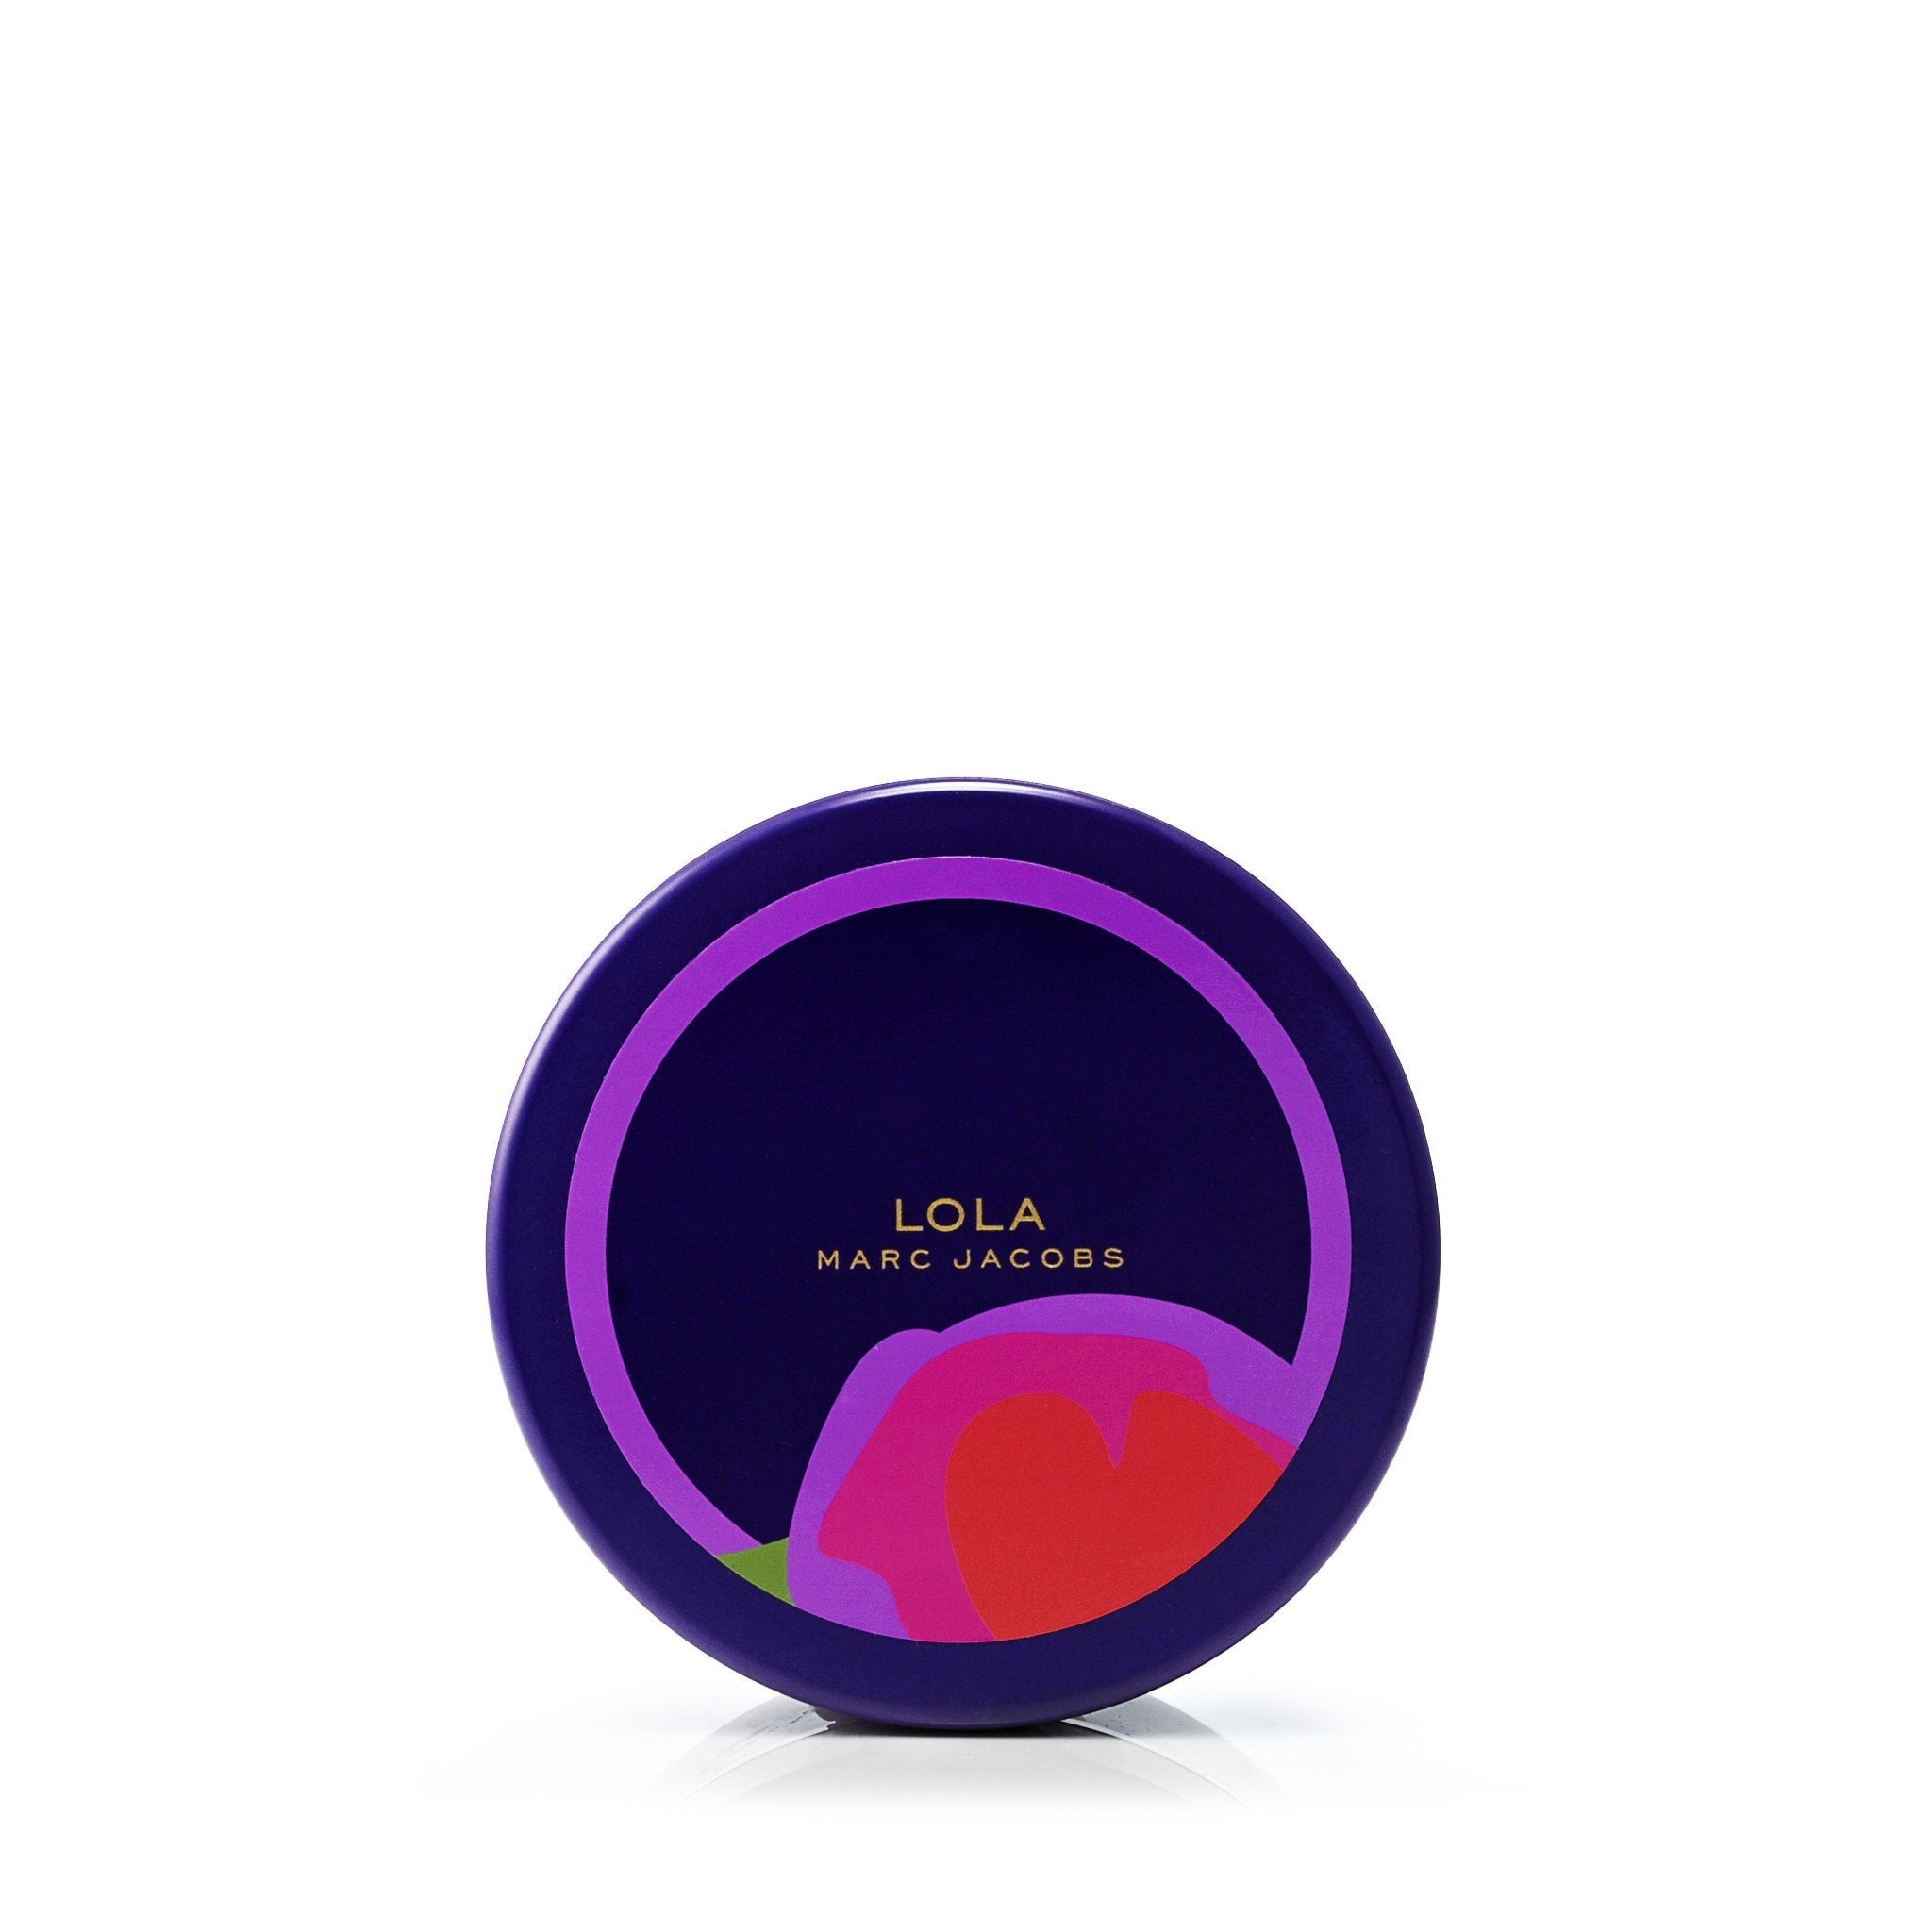 Marc Jacobs Lola 3.4 oz Eau de Parfum Spray for Women